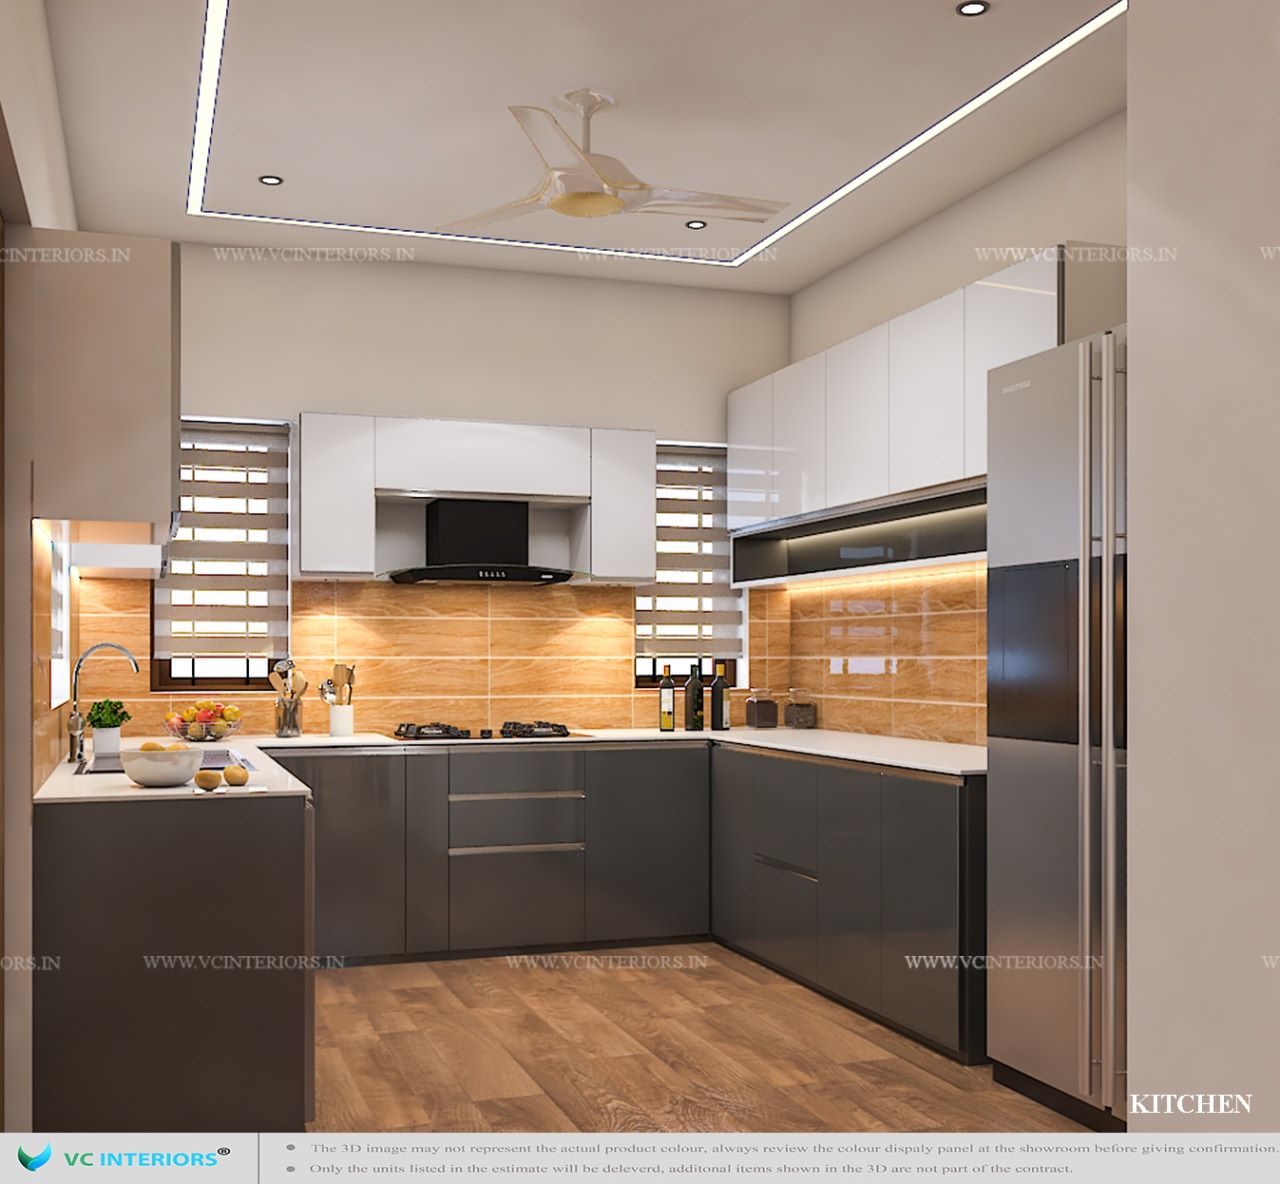 Kitchen interior designer in trivandrum